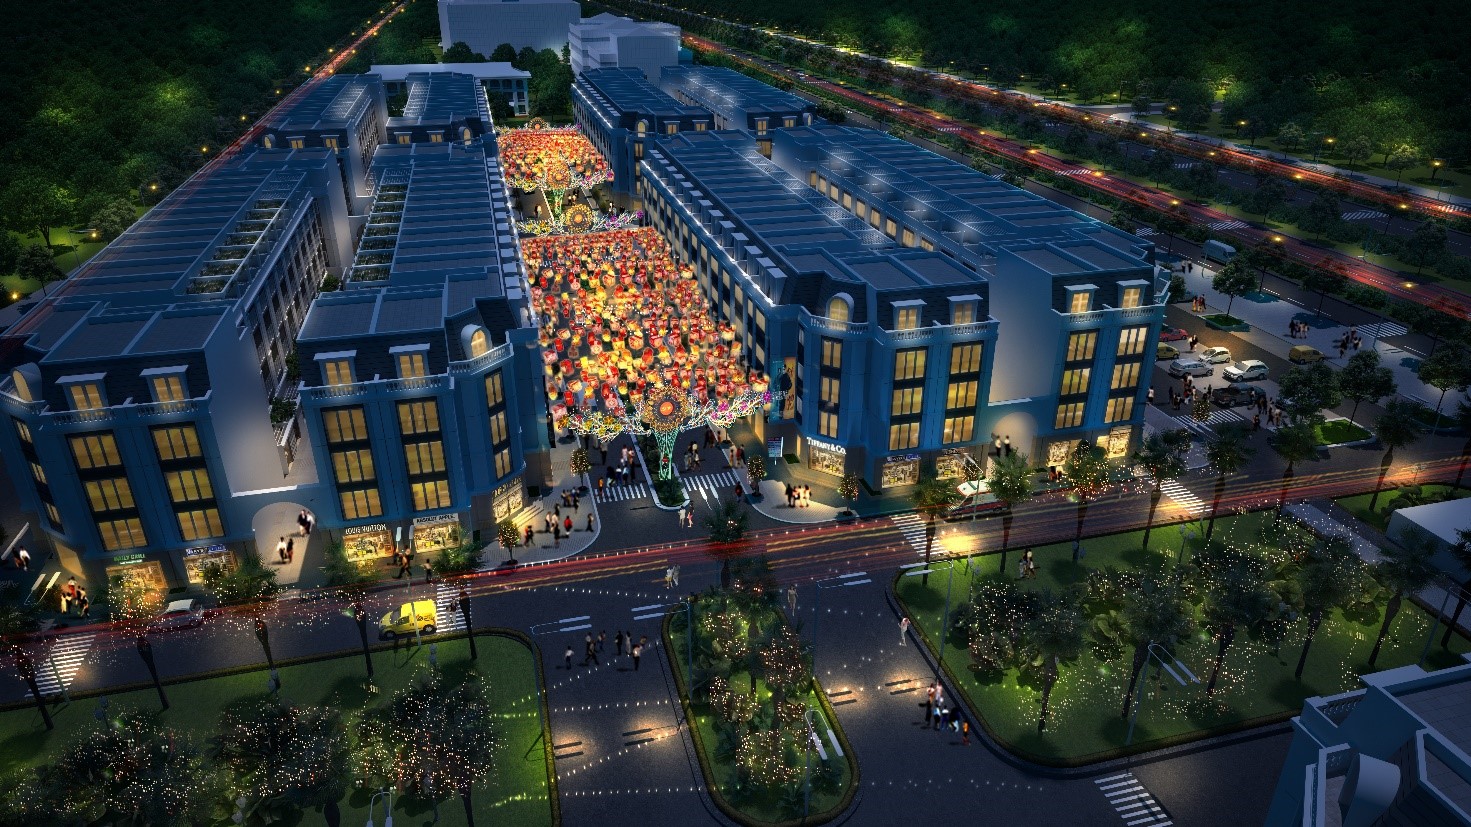 Phố đêm Hoa Châu được dự báo sẽ là khu phố đắt giá nhất Eurowindow Garden City